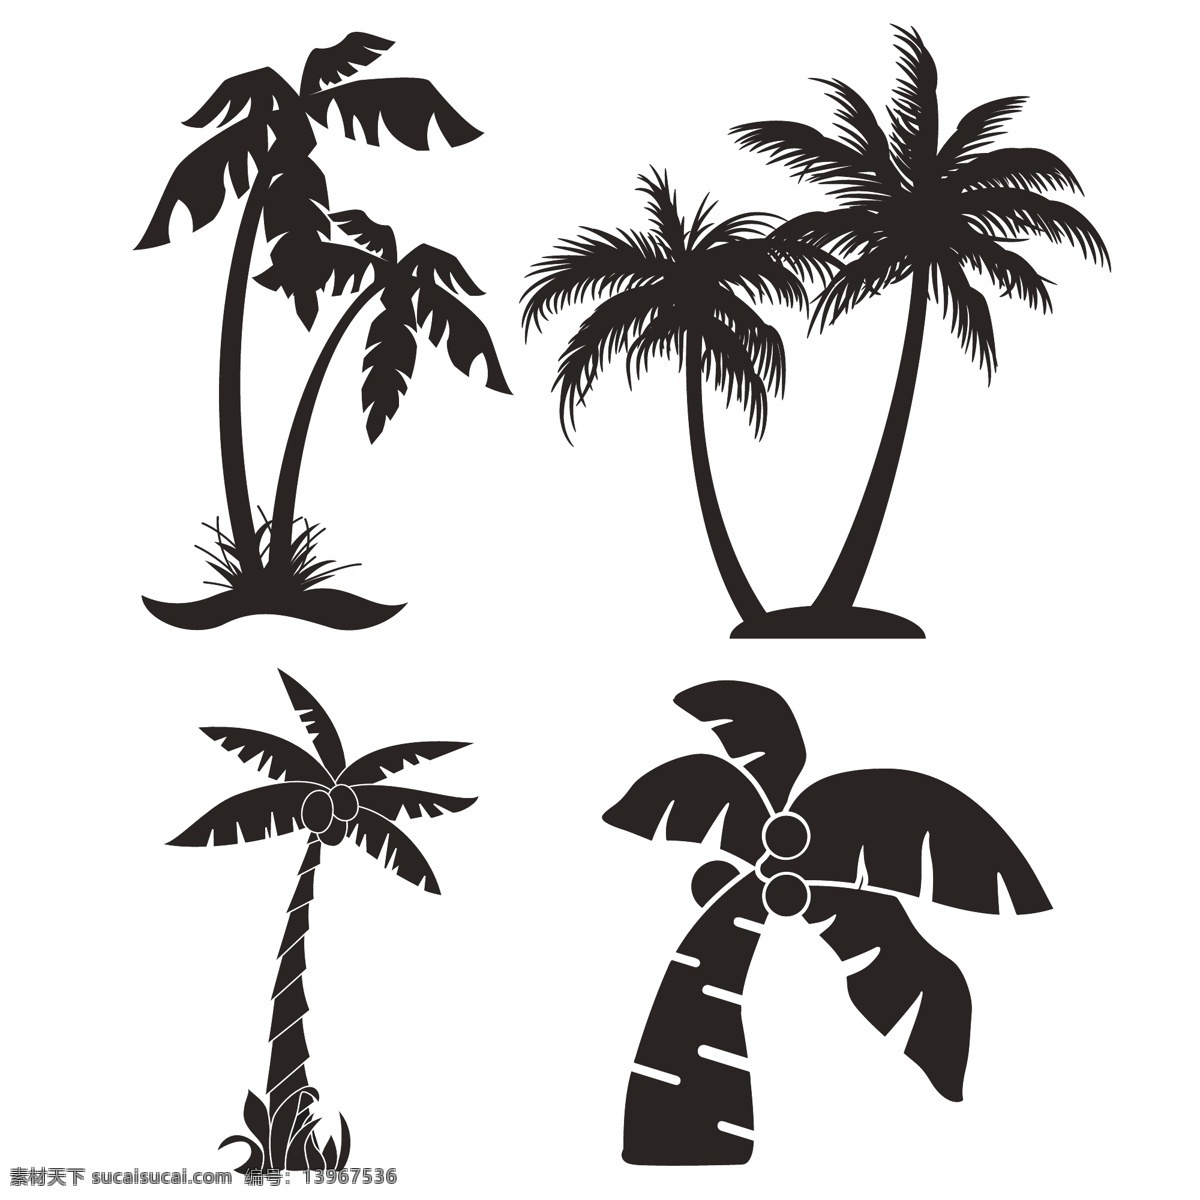 椰子树矢量图 多样椰子树 夏威夷椰子树 椰子树素材 卡通椰树 手绘椰树 椰树 椰树图片 矢量椰树 海边风情 清凉一夏 沙滩素材 椰子树 卡通椰子树 矢量椰子树 共享分素材 生物世界 树木树叶